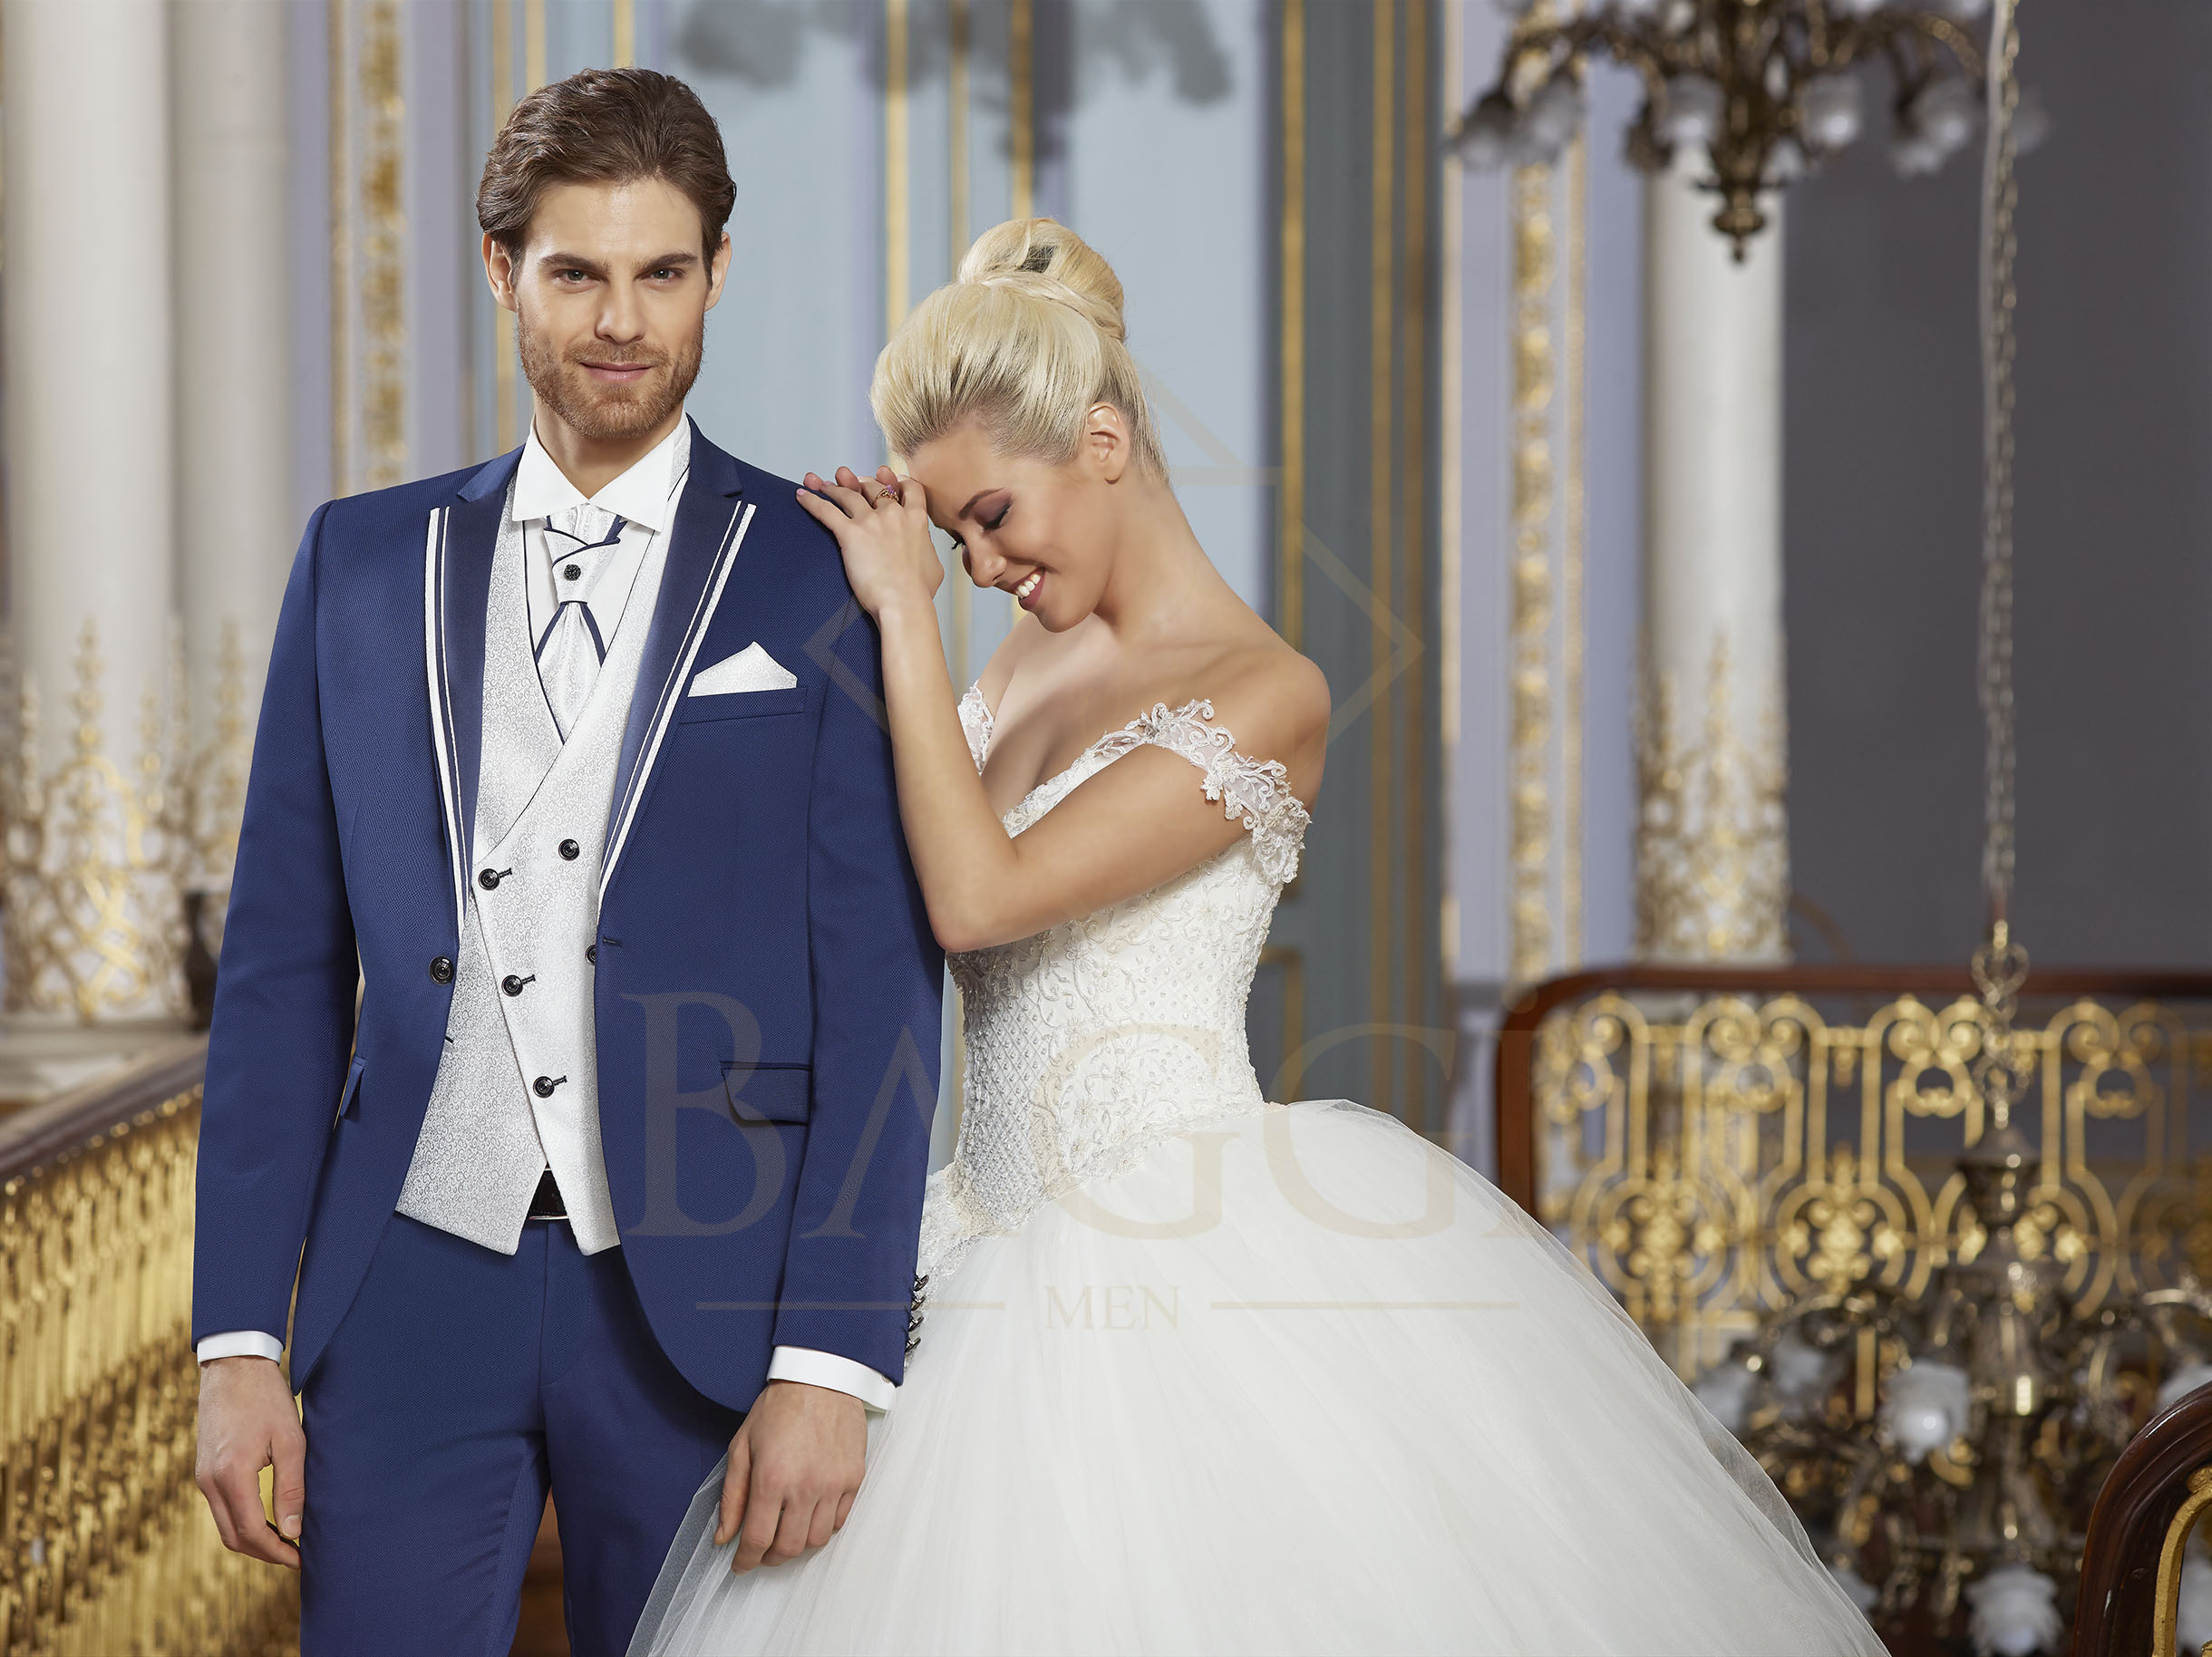 Самая красивая пара года! Купи в комплекте свадебное платье и свадебный костюм, получи хорошую скидку!